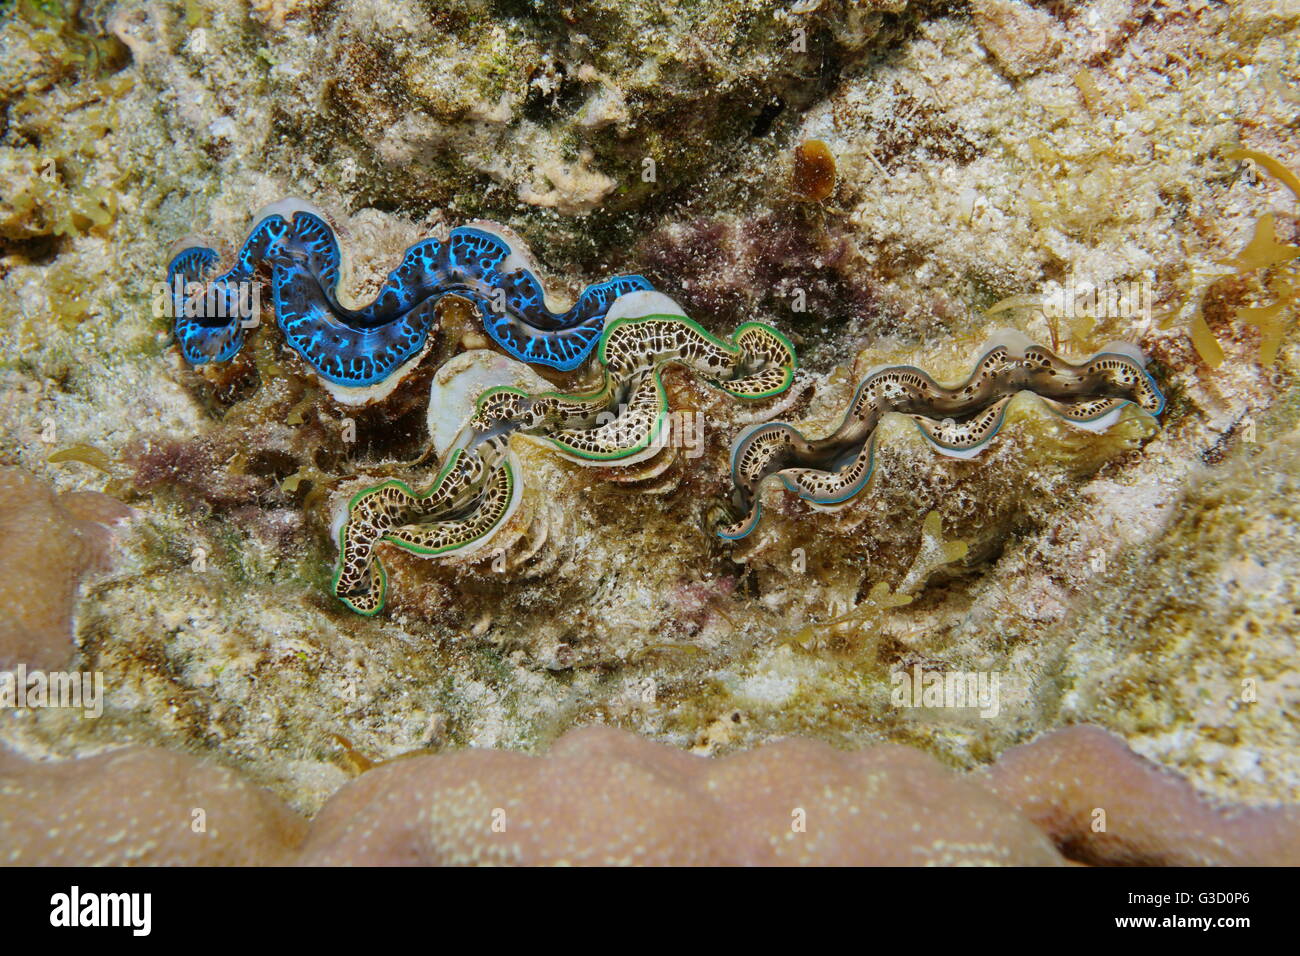 Trois maxima clam, Tridacna maxima, avec différentes couleurs, des mollusques bivalves marins sous l'eau, l'océan Pacifique, Polynésie française Banque D'Images